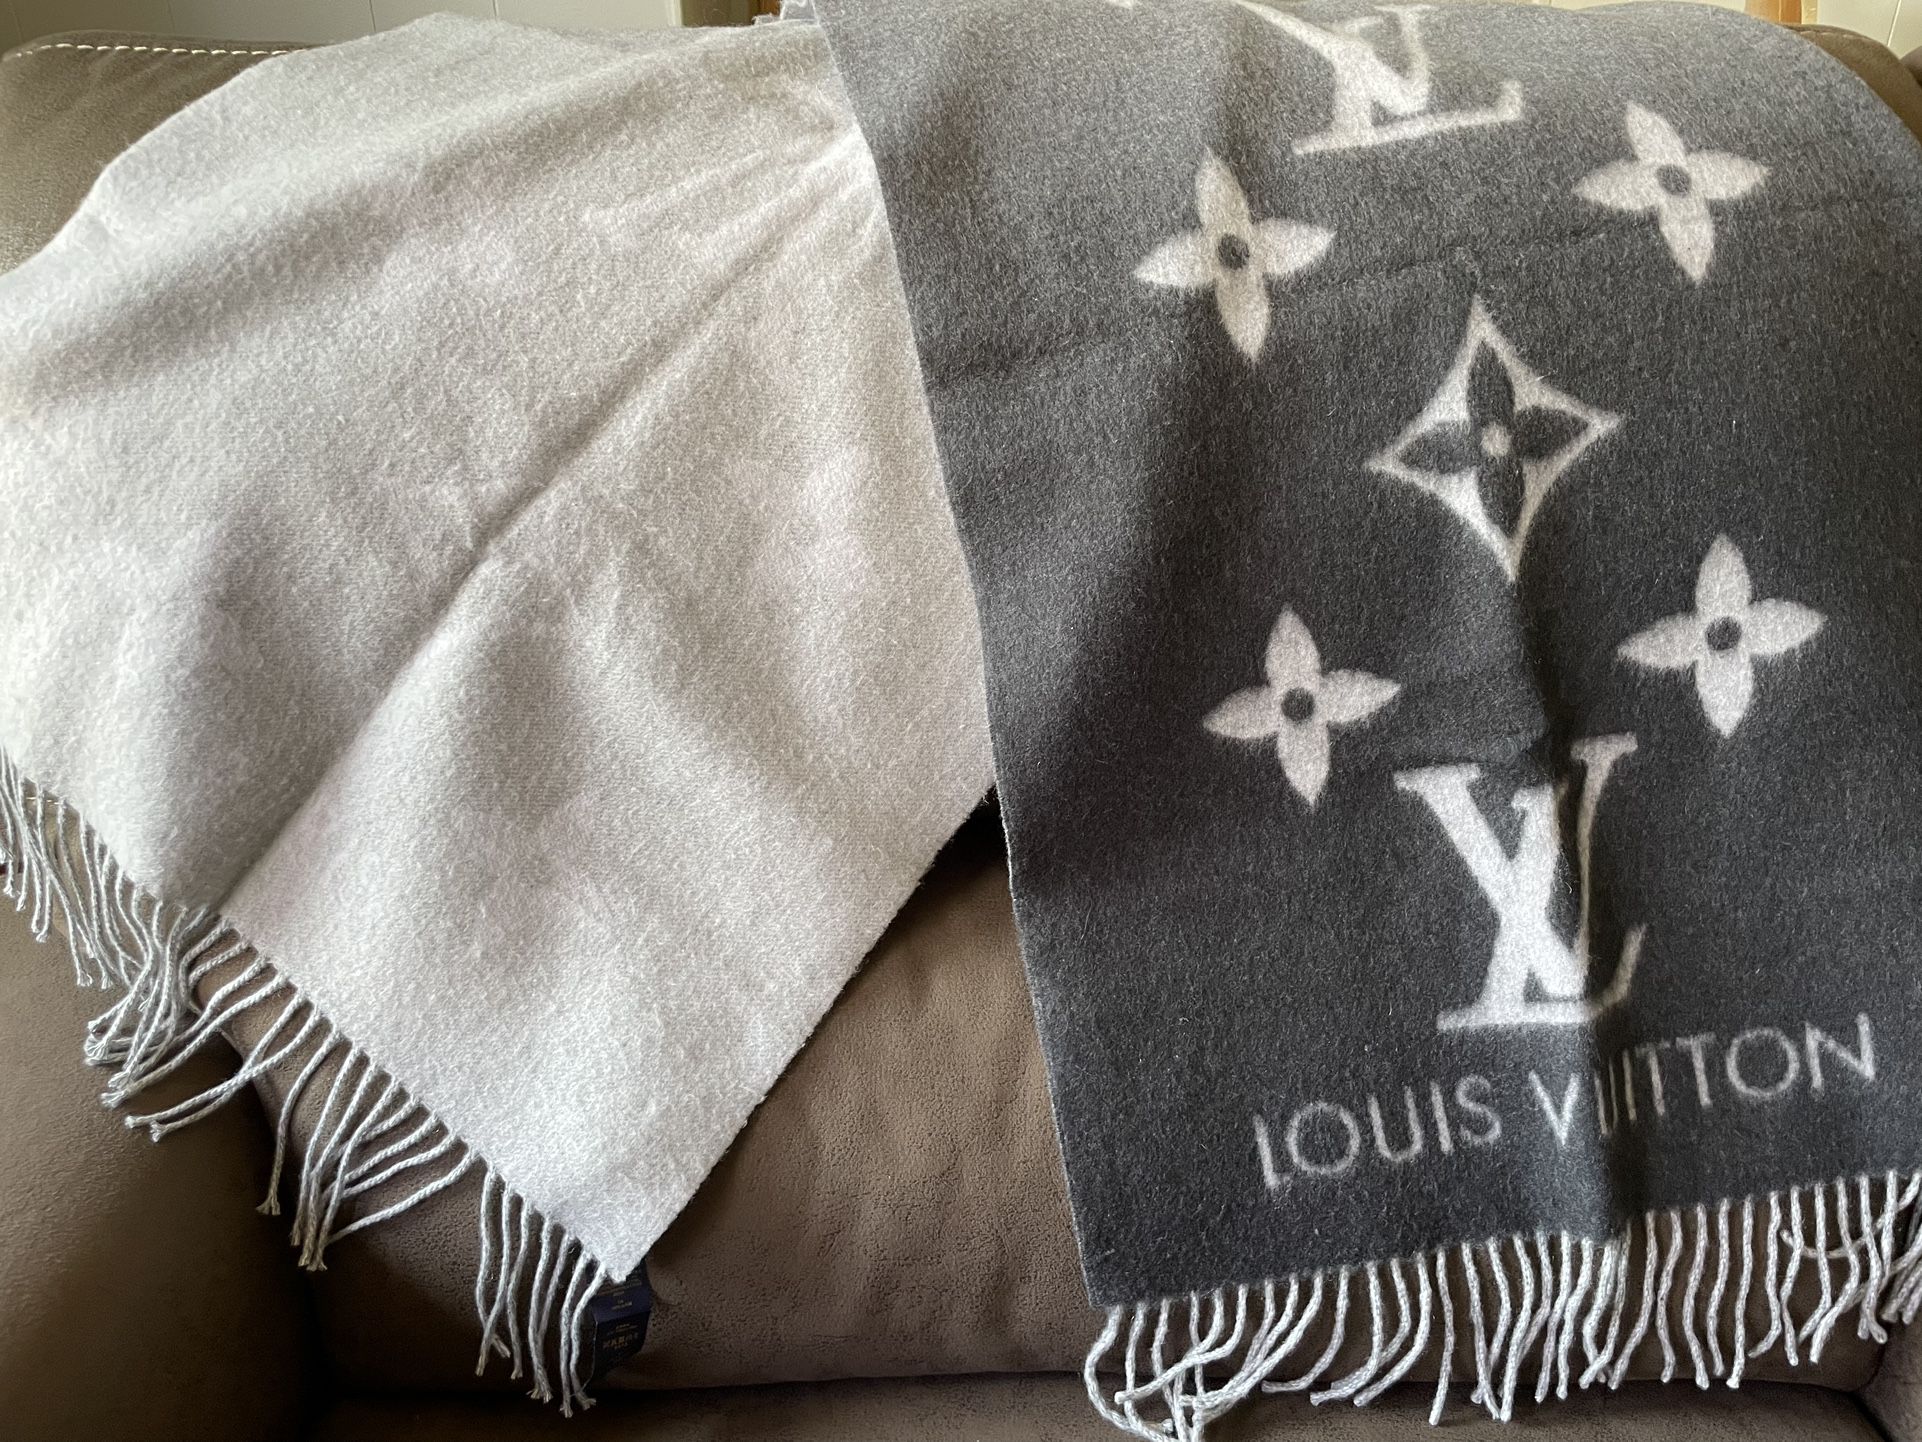 Louis Vuitton Reykjavik Gradient Scarf Grey Cashmere